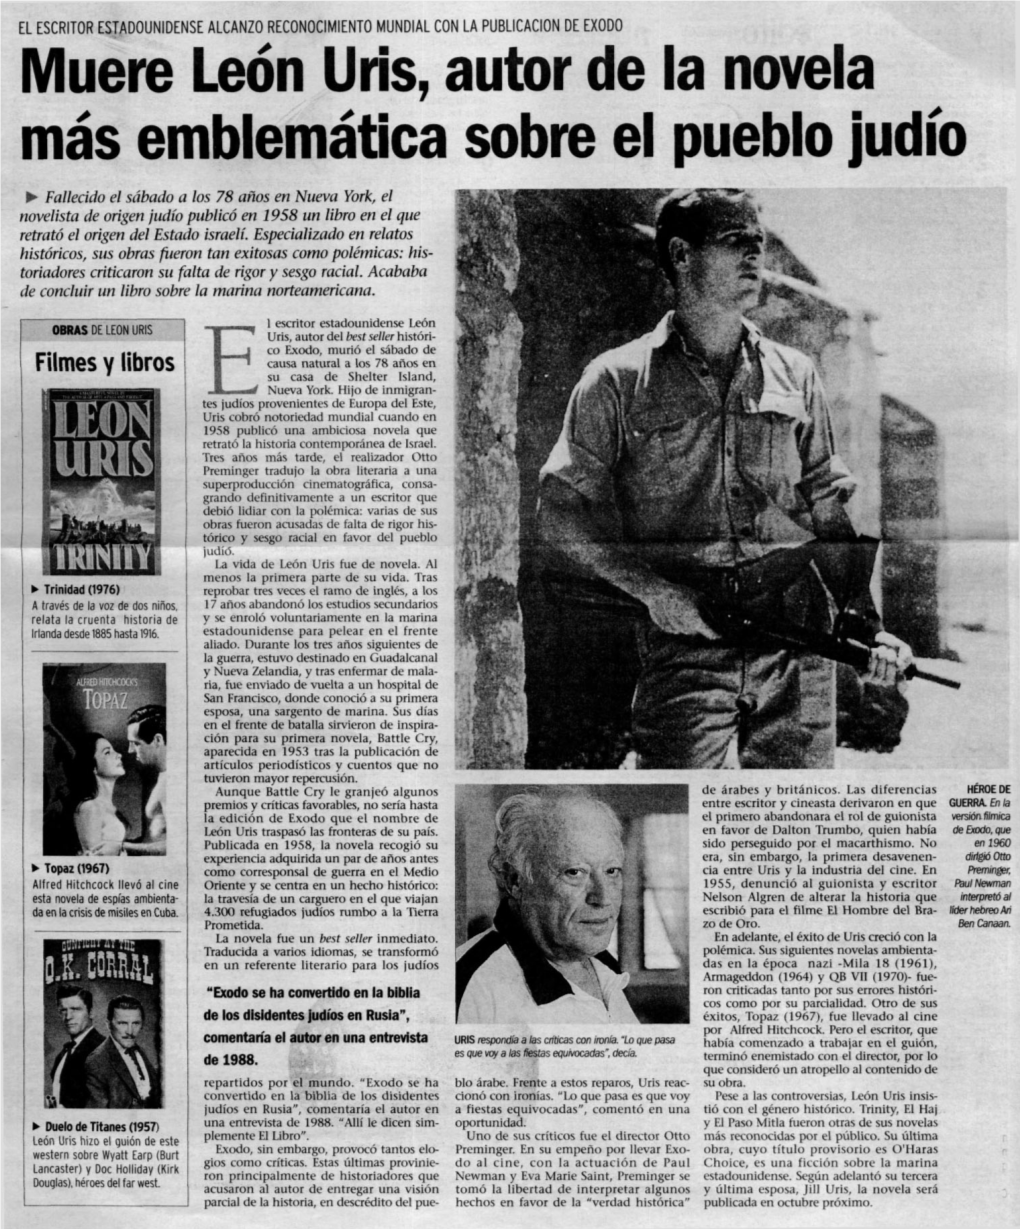 Muere Leon Uris, Autor De La Novela Mas Emblematica Sobre El Pueblo